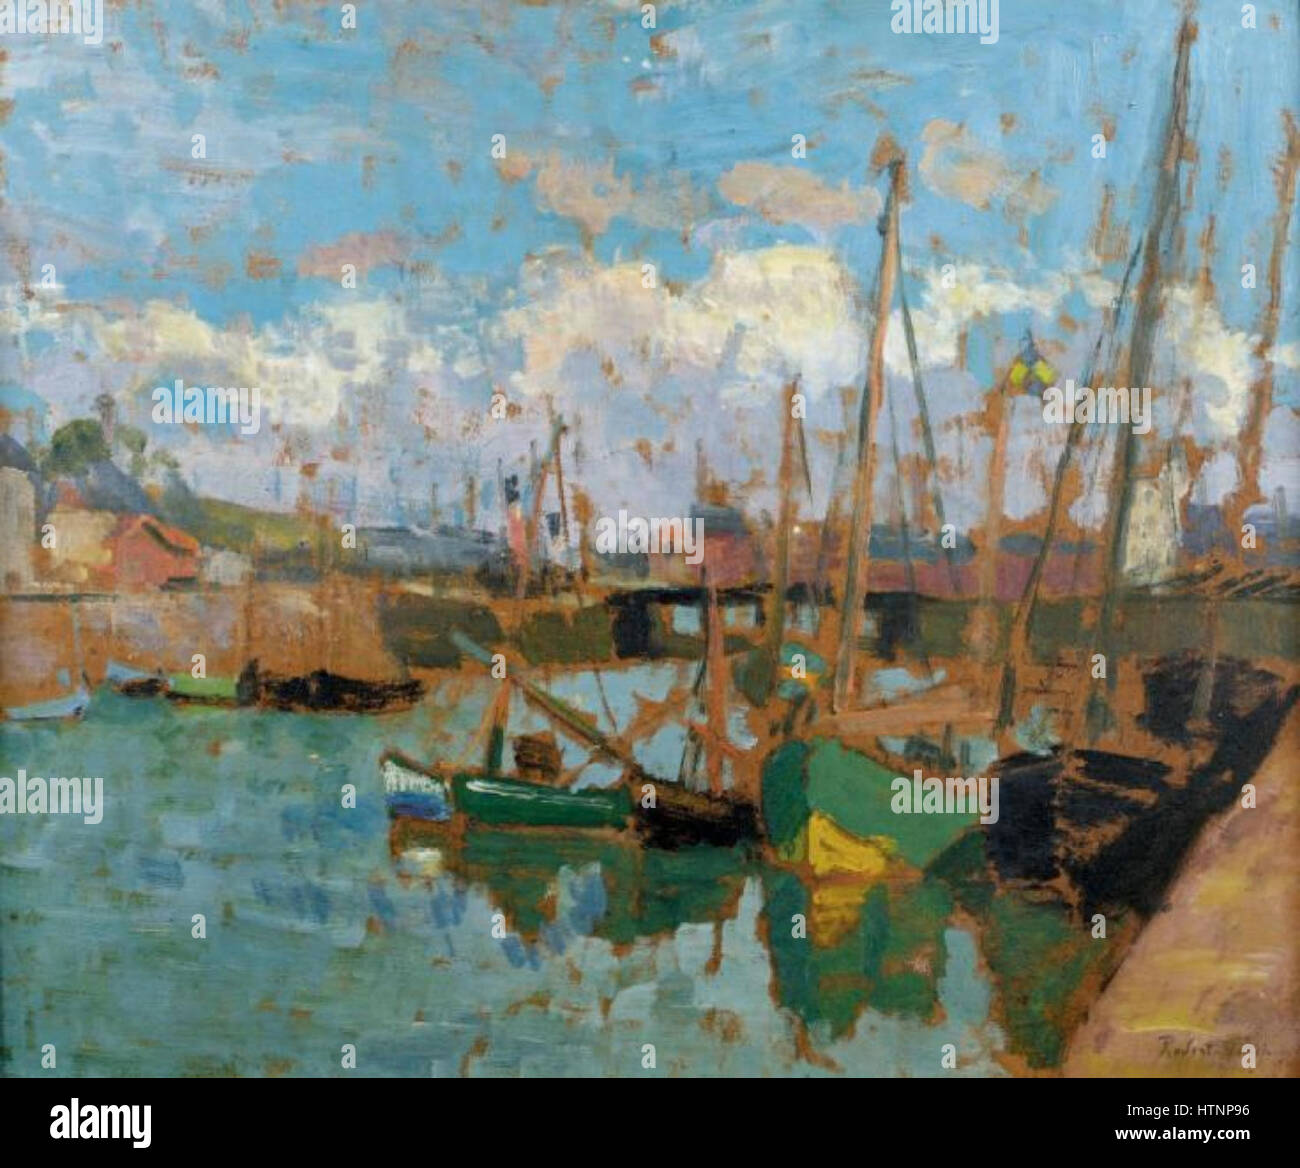 Robert Antoine Pinchon, bateaux au port, huile sur carton, 46 x 55 cm Banque D'Images